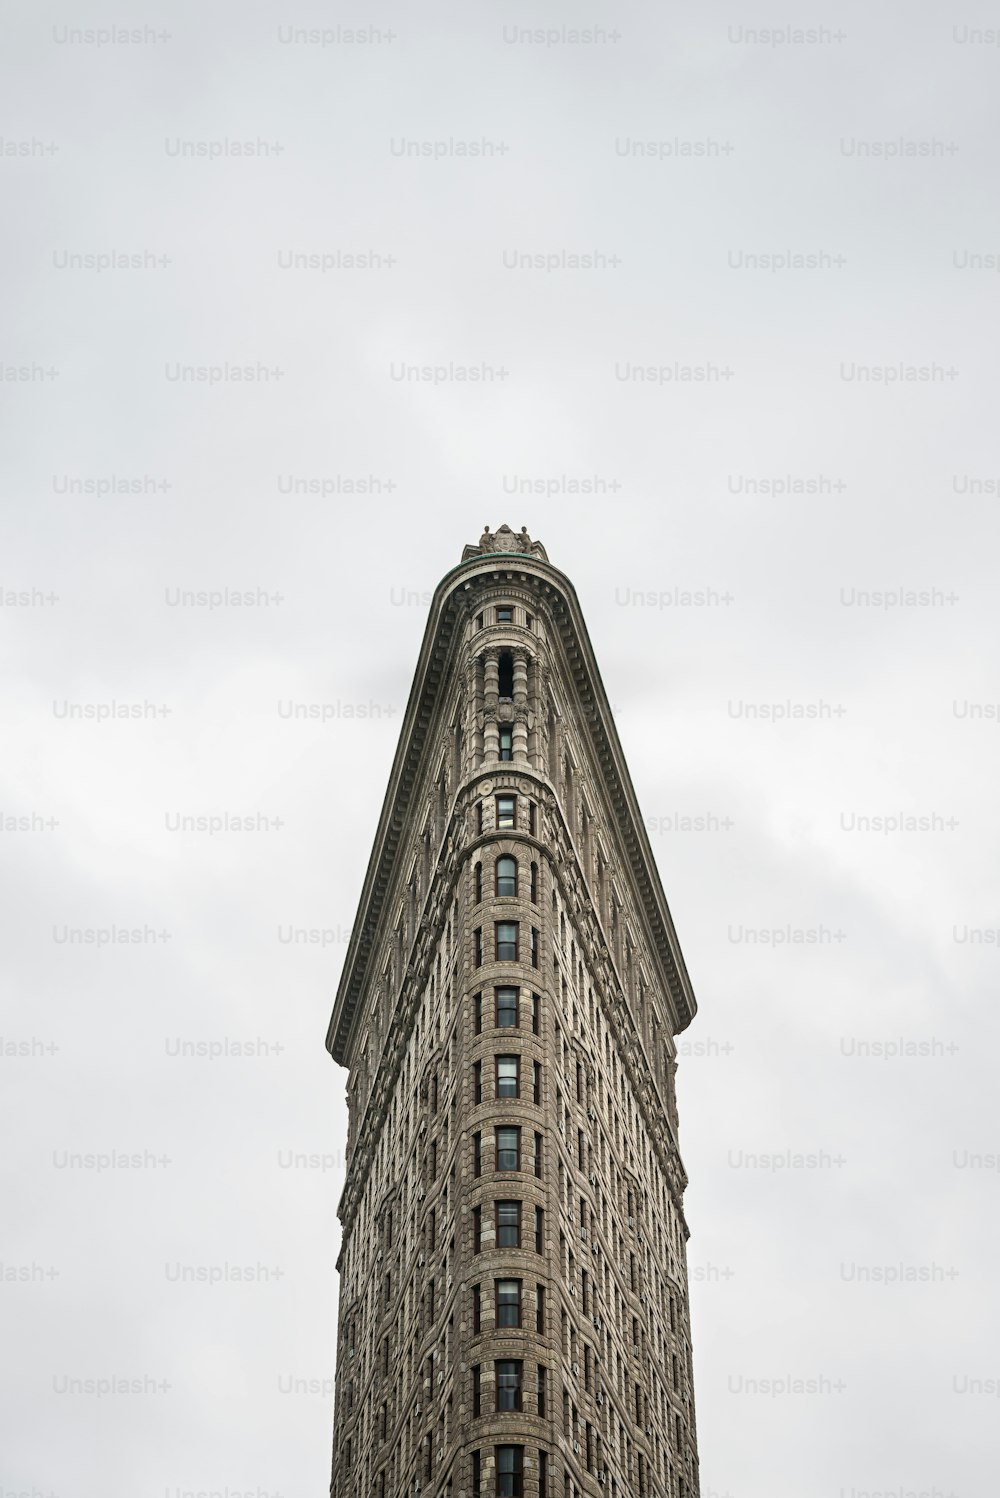 Frontansicht des Flatiron Gebäudes in New York. Ursprünglich als Fuller Building bekannt, wurde es 1902 nach dem Entwurf von Chicagos Daniel Burnham fertiggestellt und wurde zu dieser Zeit eines der höchsten Gebäude der Stadt und einer von nur zwei Wolkenkratzern nördlich der 14th Street.